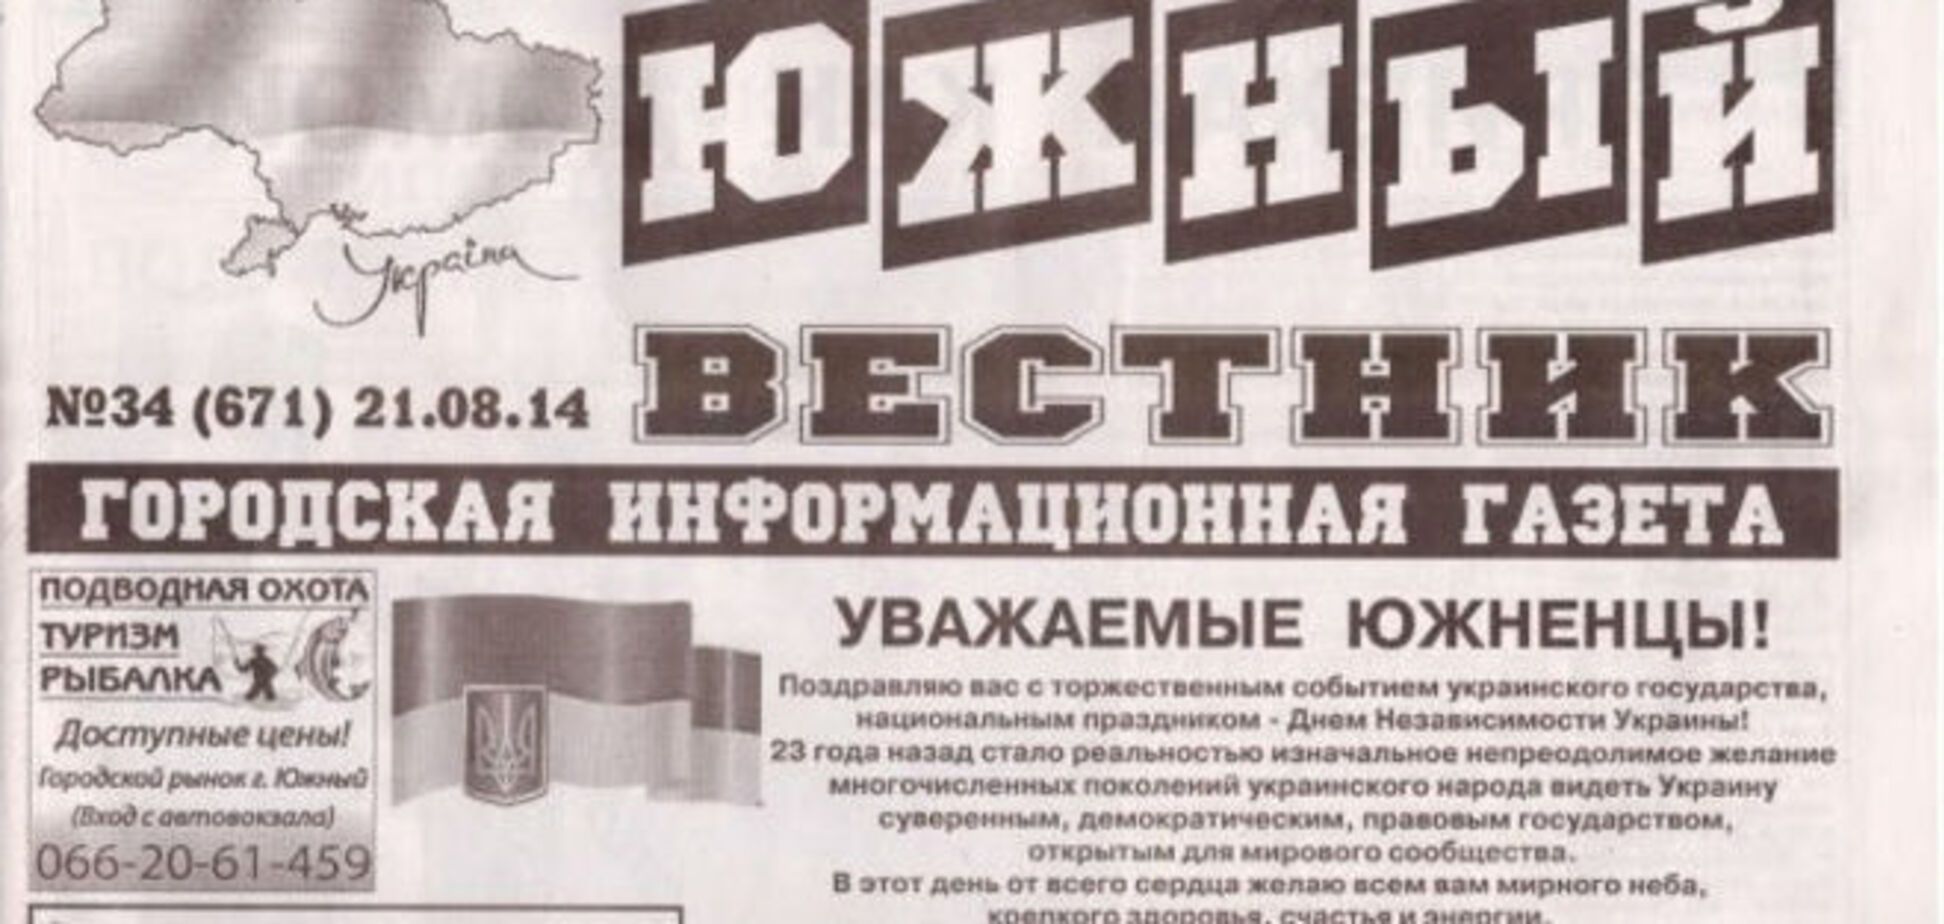 Одесская газета поздравила читателей с Днем Независимости картой Украины без Крыма